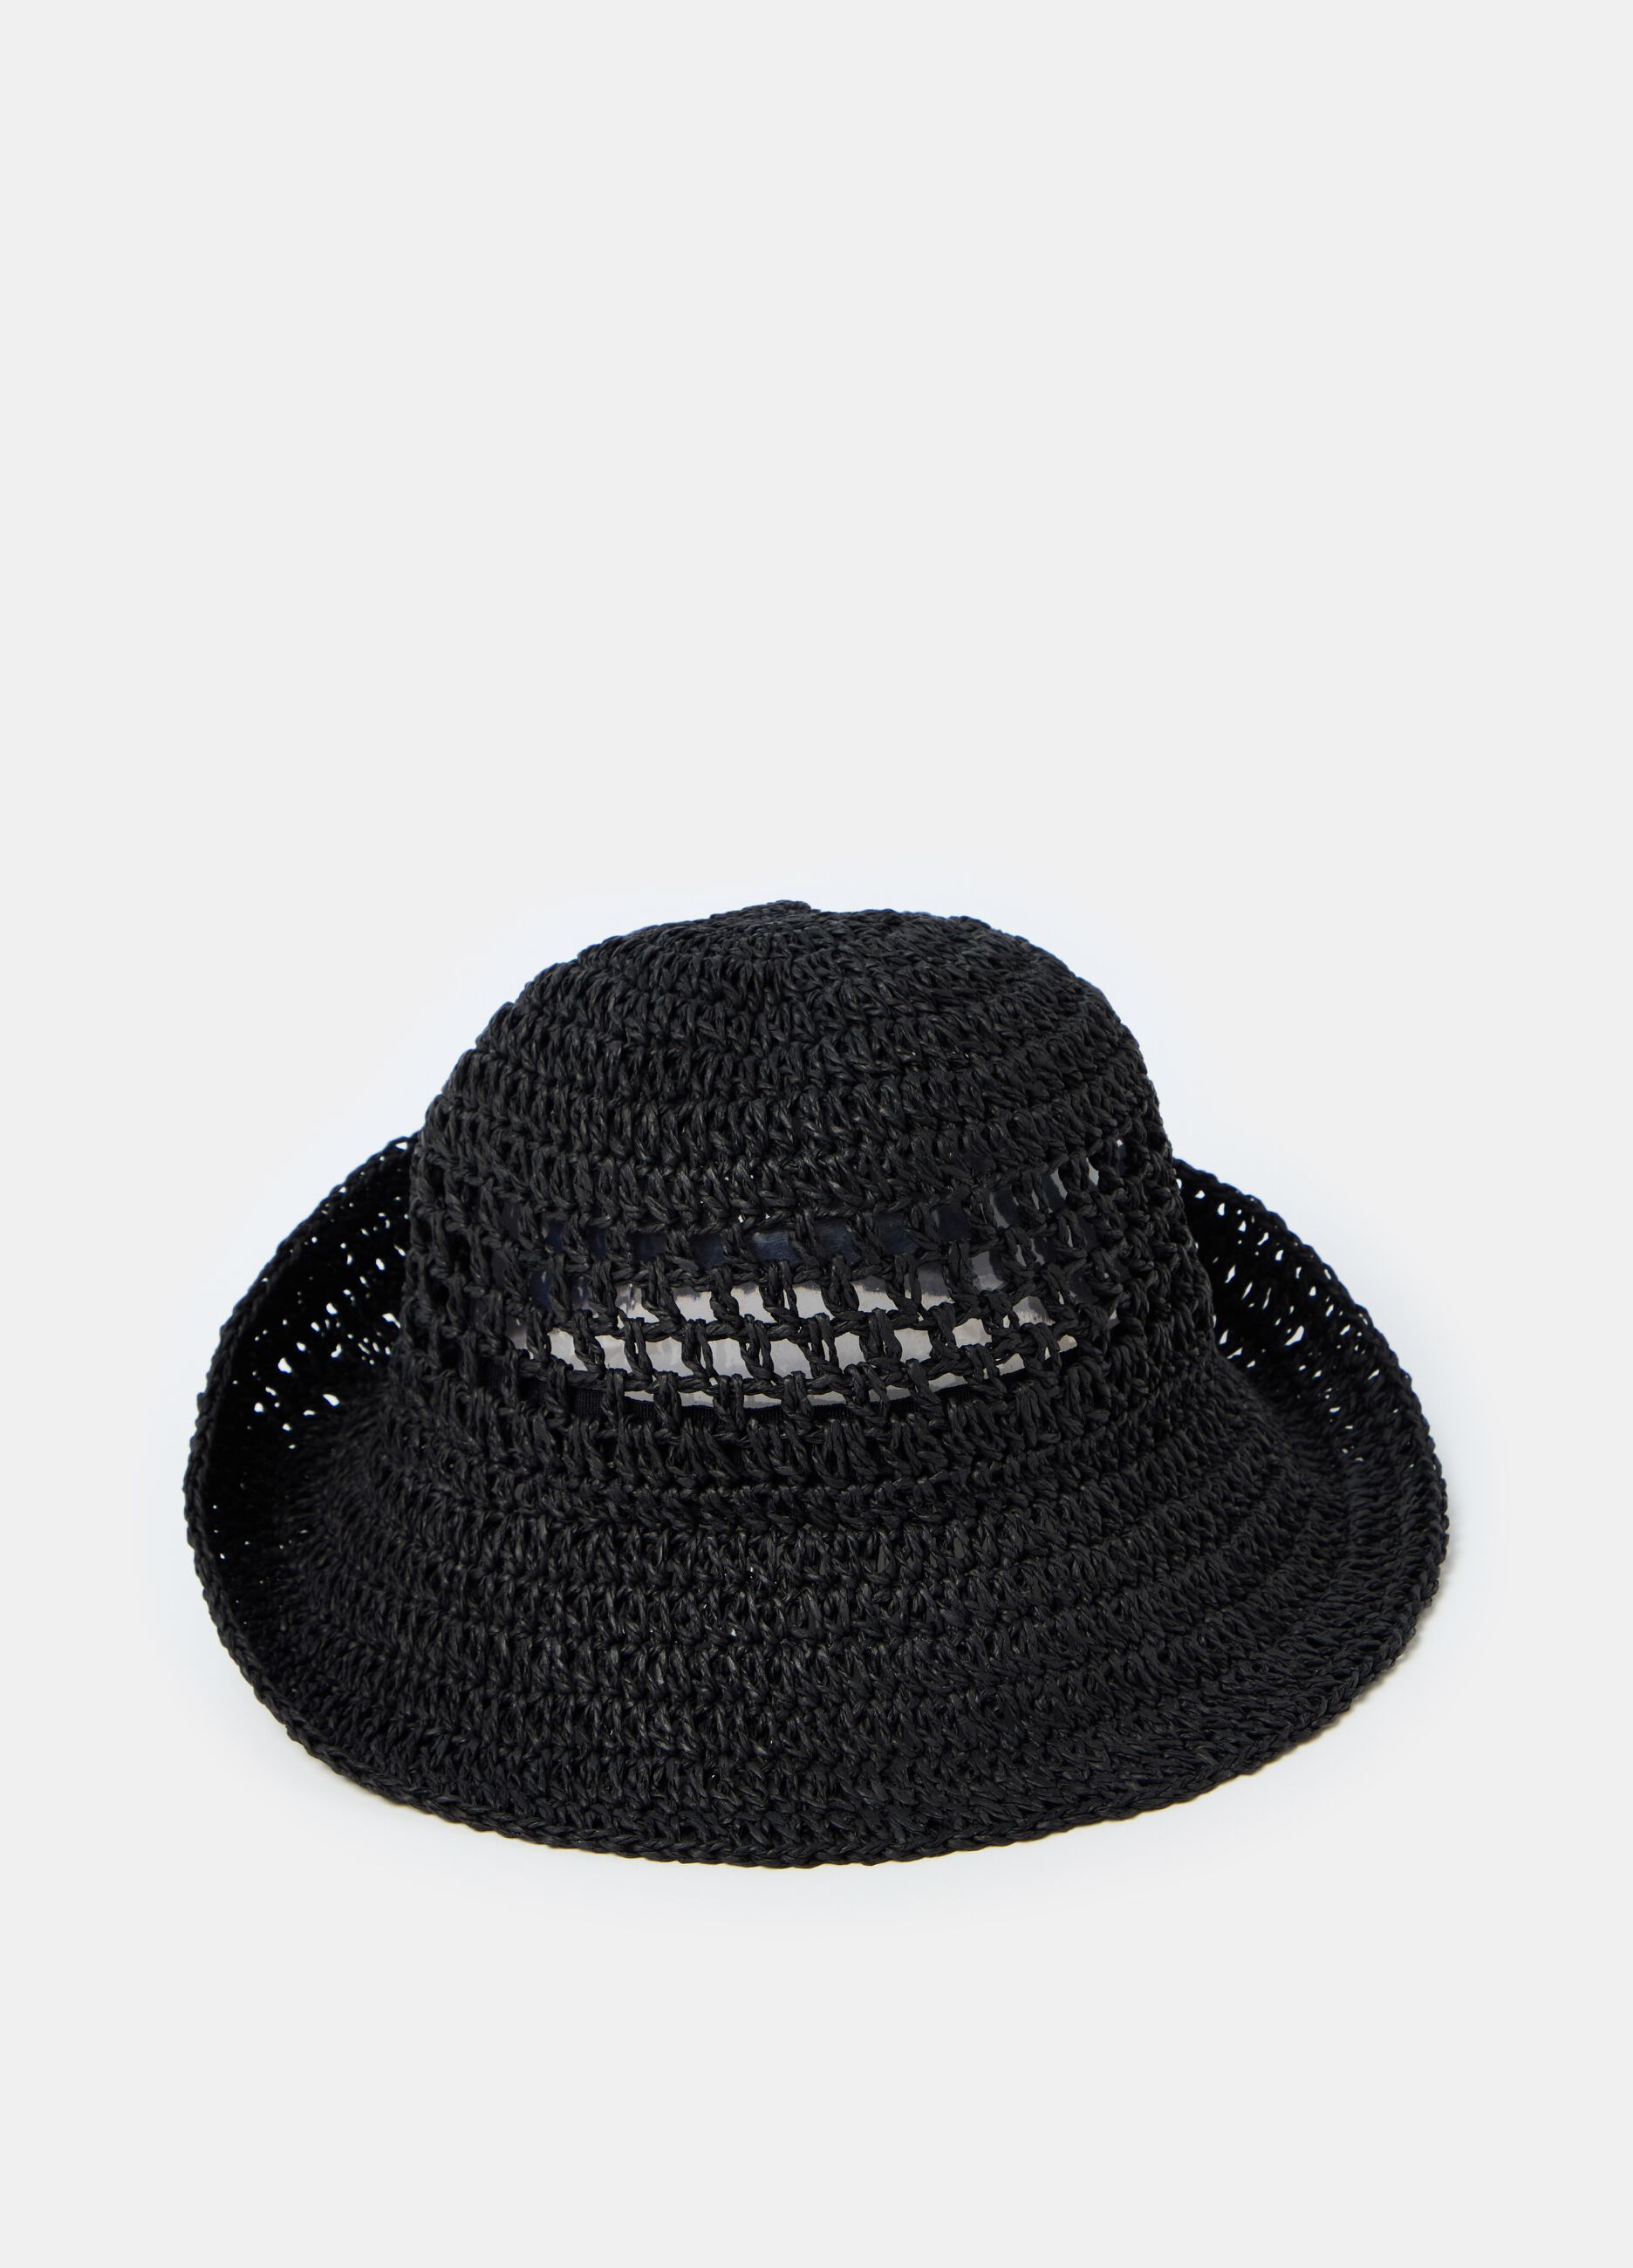 Openwork raffia hat